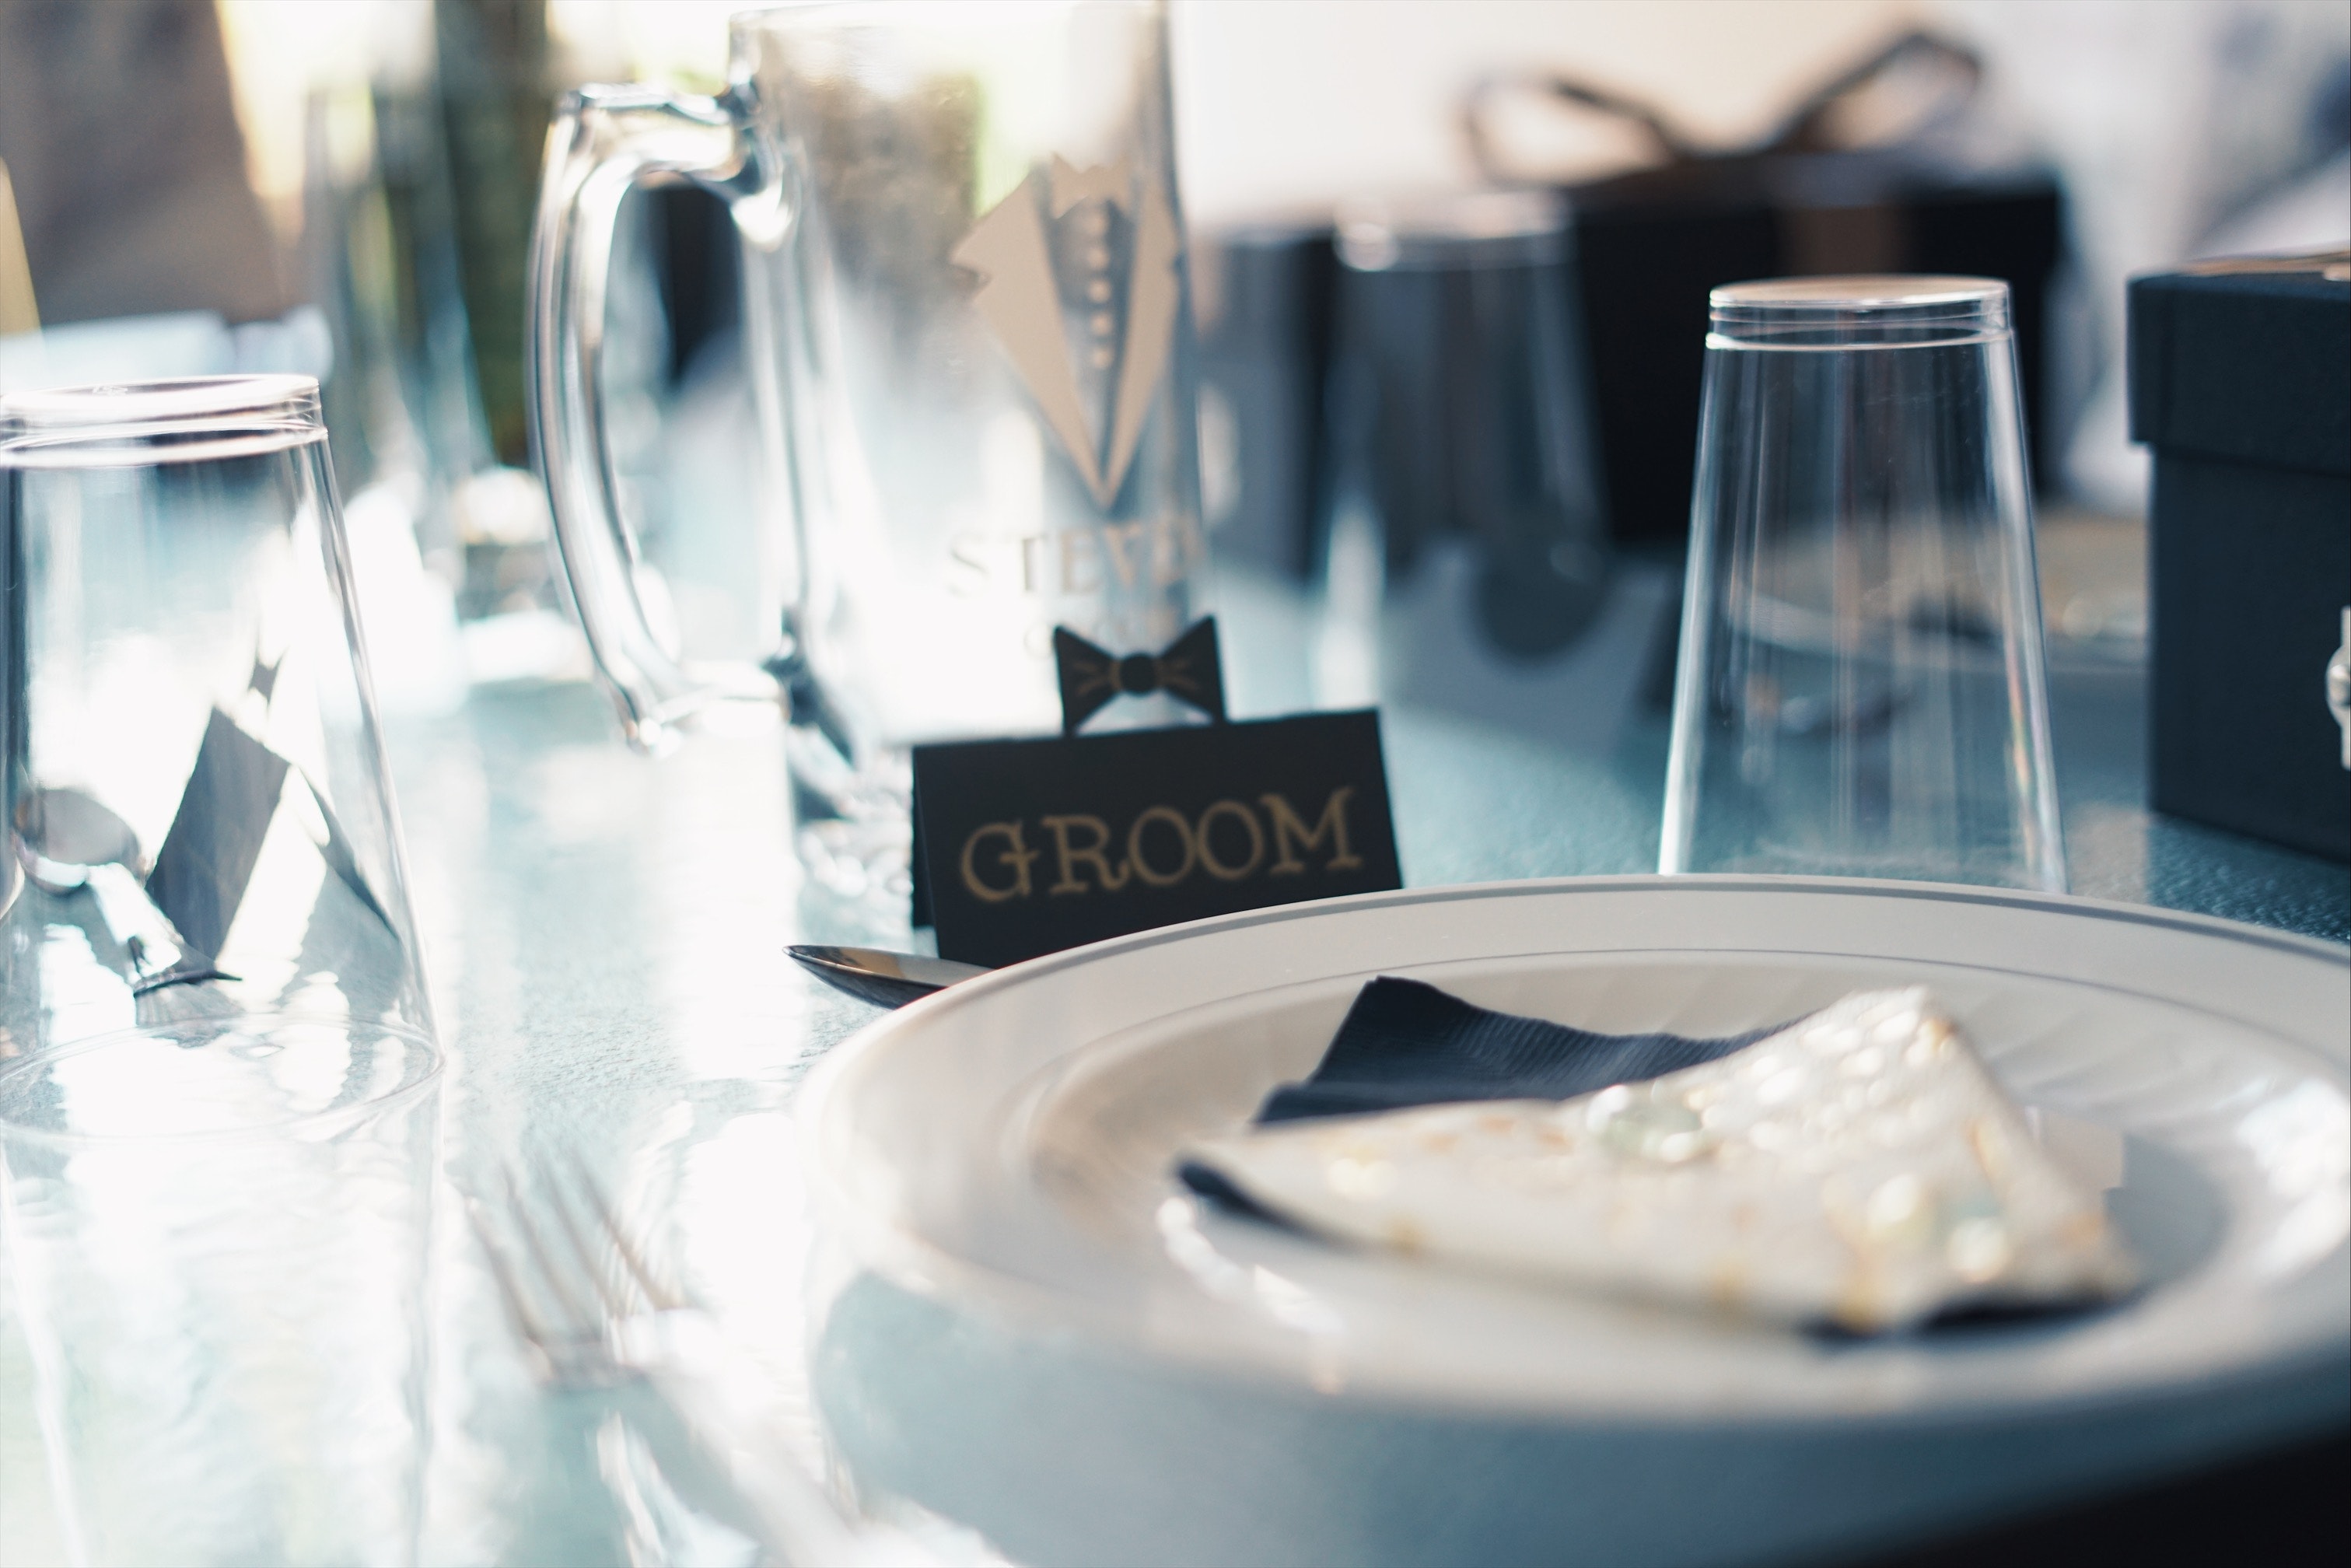 Assiette ronde en céramique blanche près de tasses en verre et d'un panneau de marié | Source : Pexels